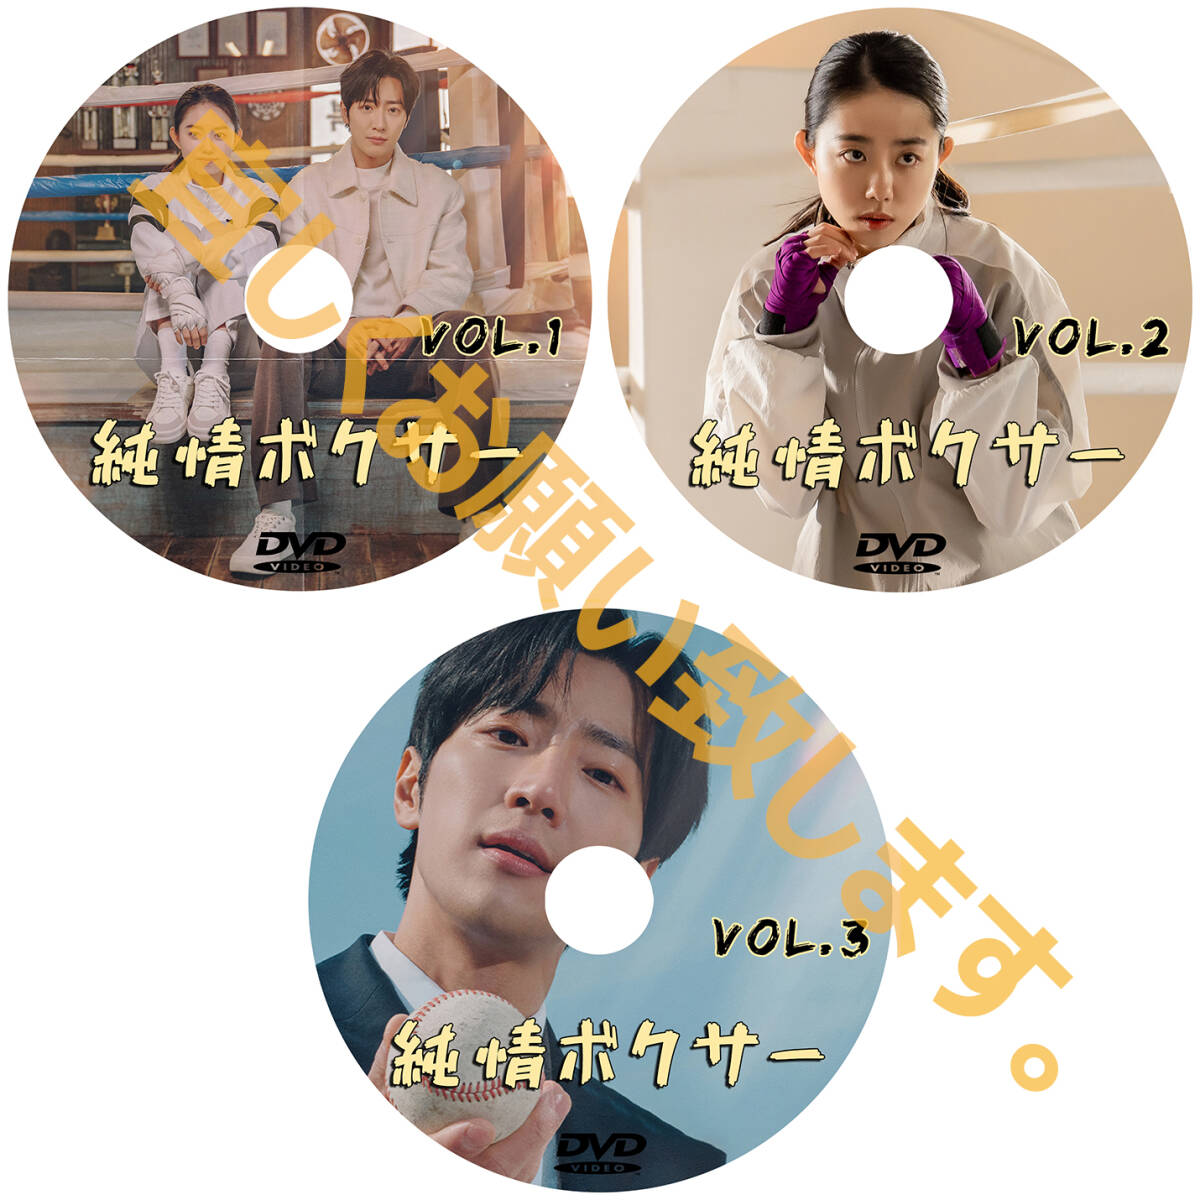 まとめ 買い1点「moon」DVD商品の説明から1点作品をお選びください。「by」【韓国ドラマ】「sea」